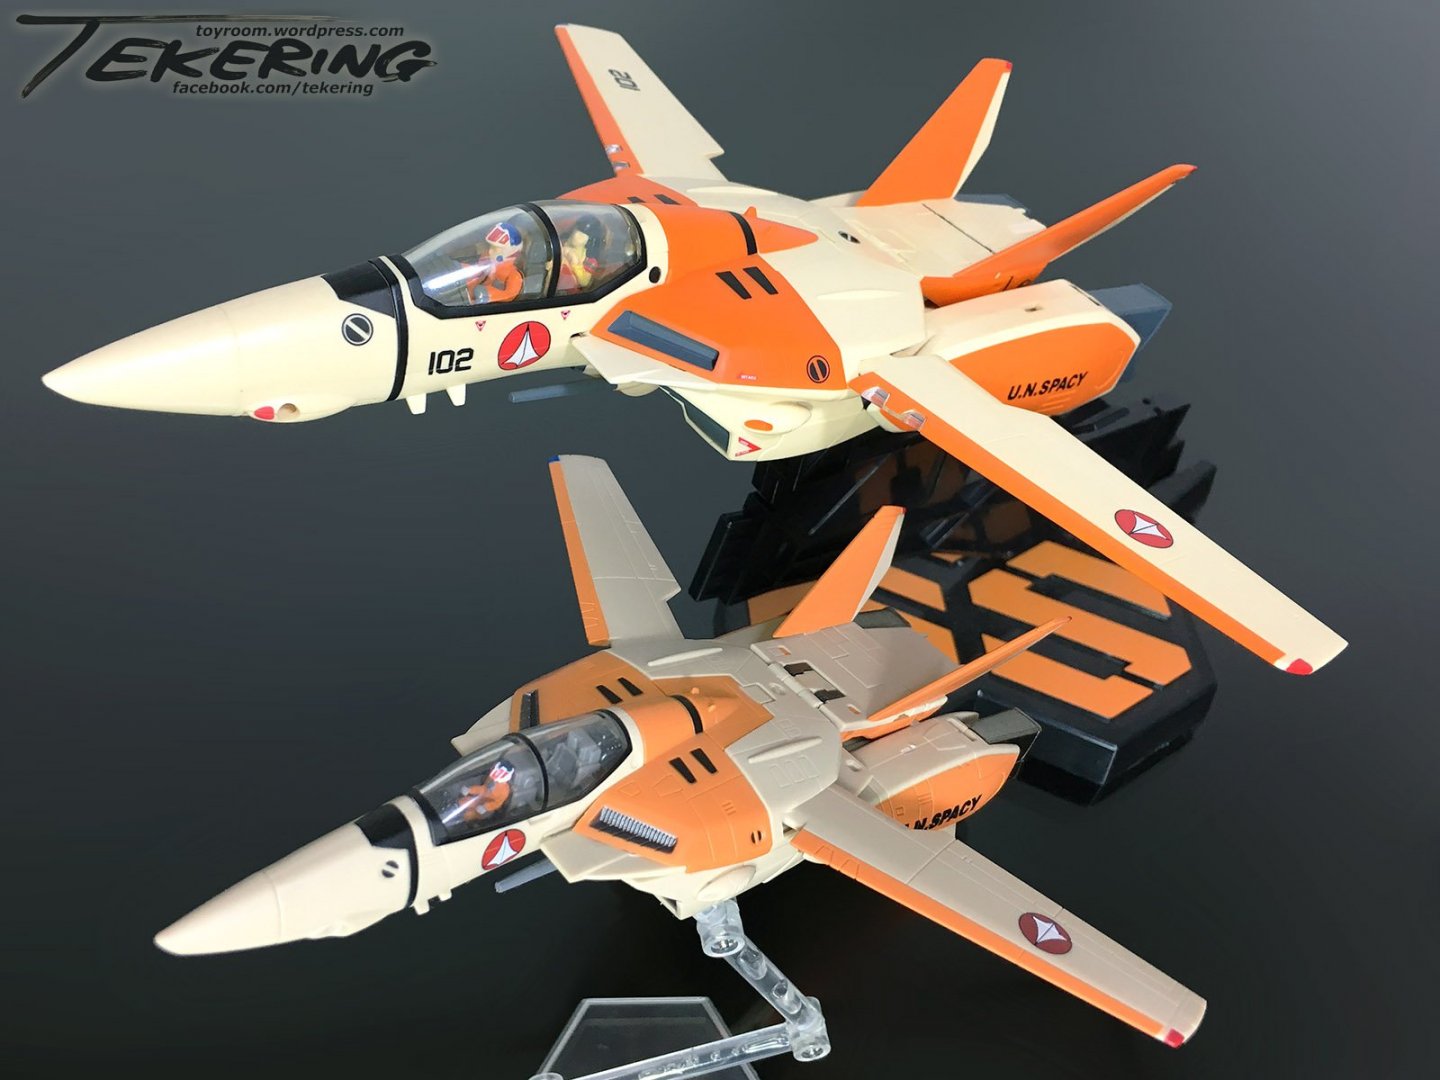 240326281_YamatovsBandai-Fighter.thumb.jpg.88985ea1dbd544622b7b87167f0fc4ec.jpg